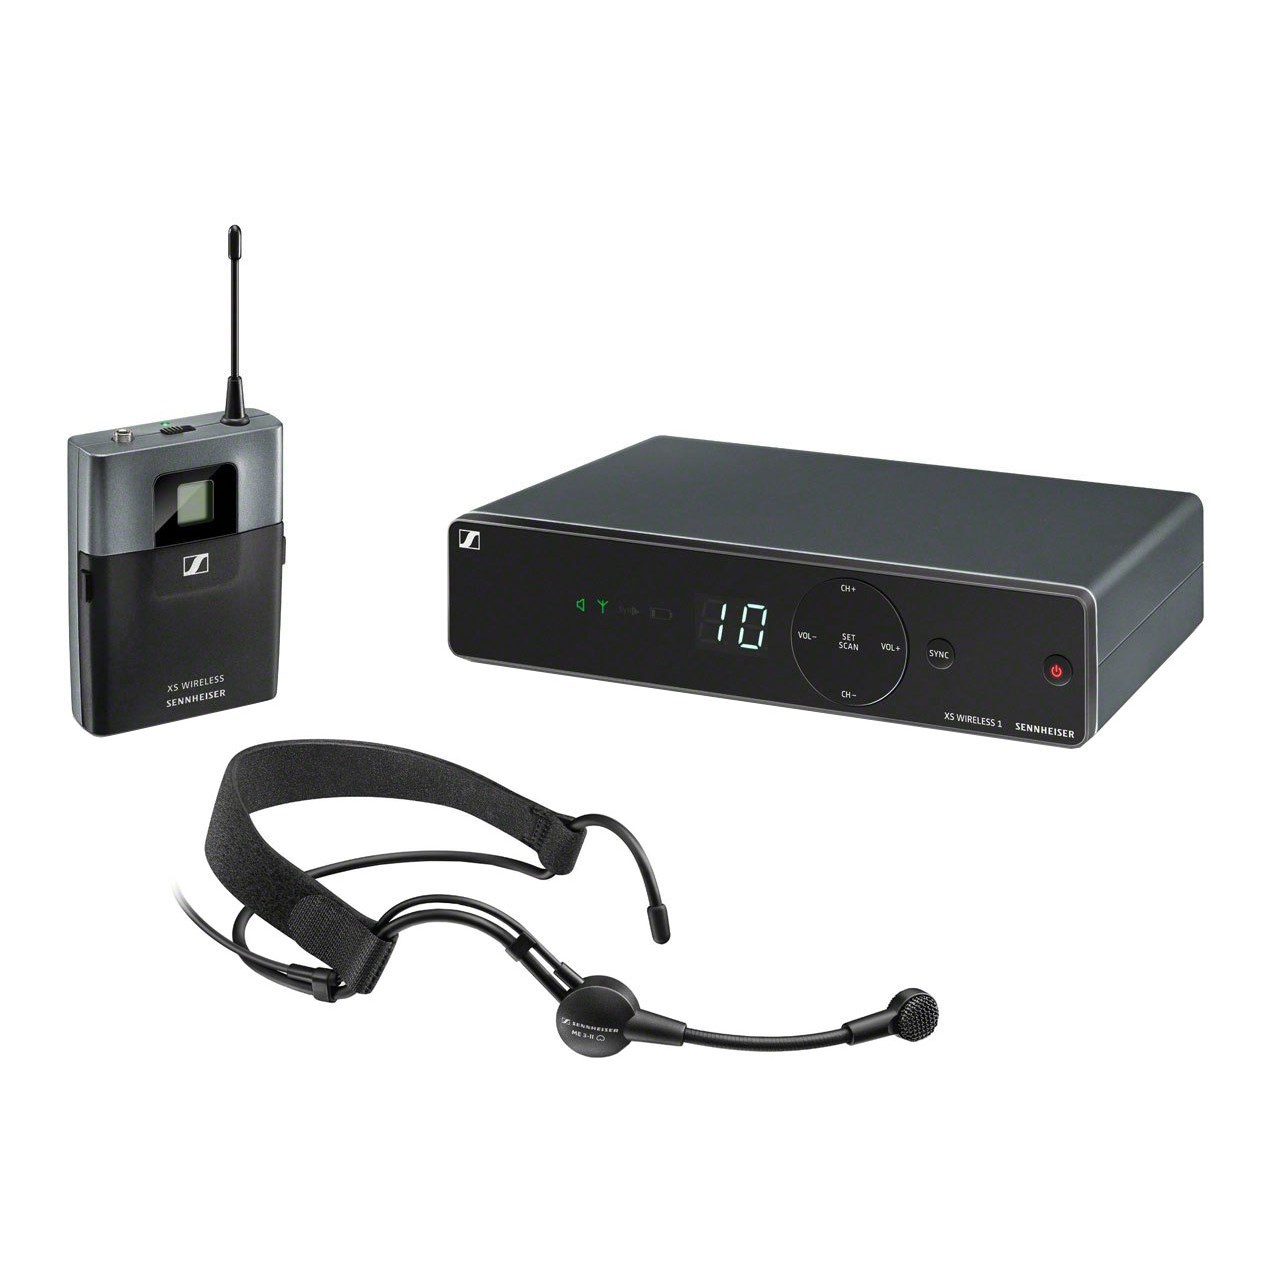 سیستم میکروفون بی سیم سنهایزر مدل XSW 1-ME3